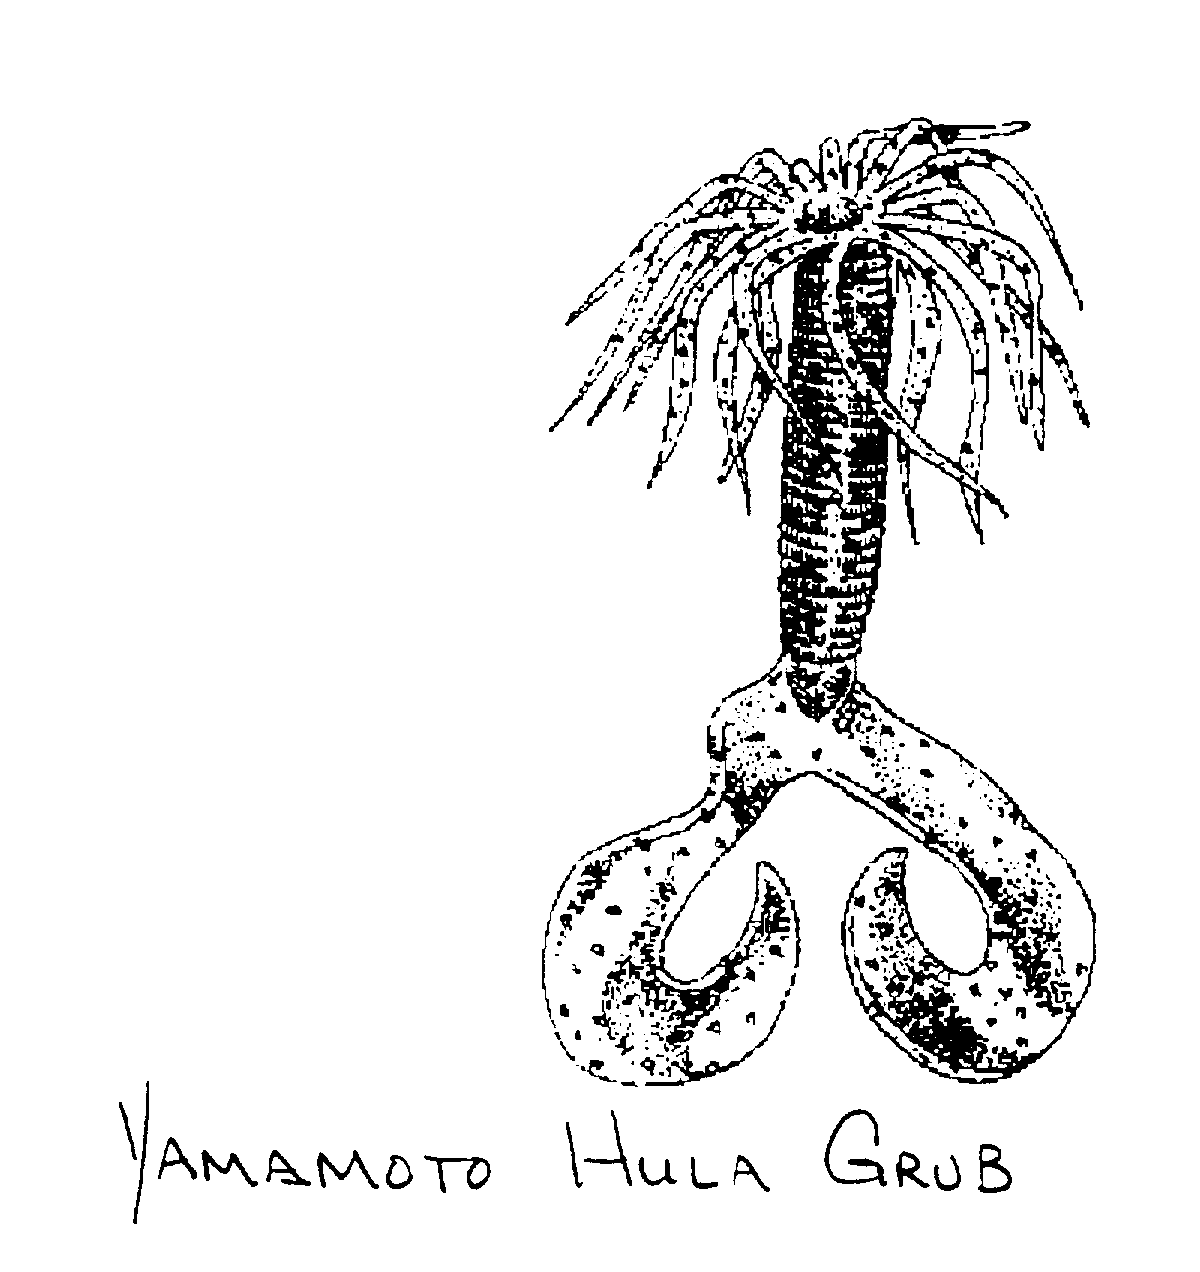 YAMAMOTO HULA GRUB